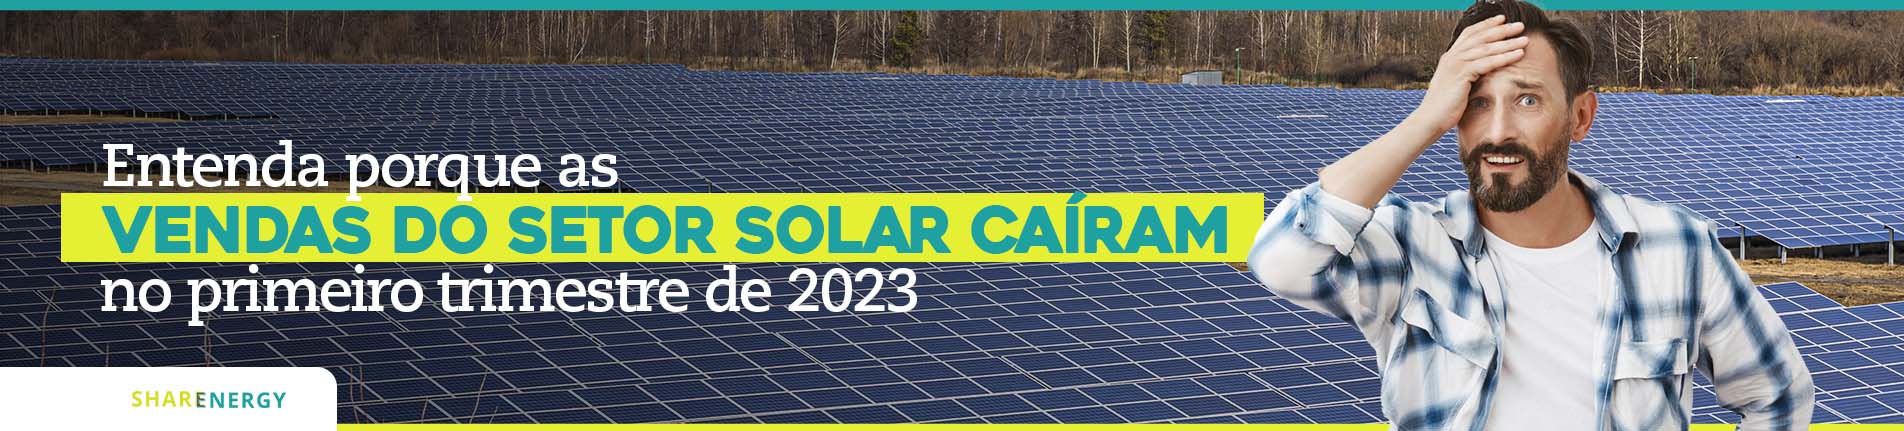 Vendas de energia solar: entenda a queda em 2023